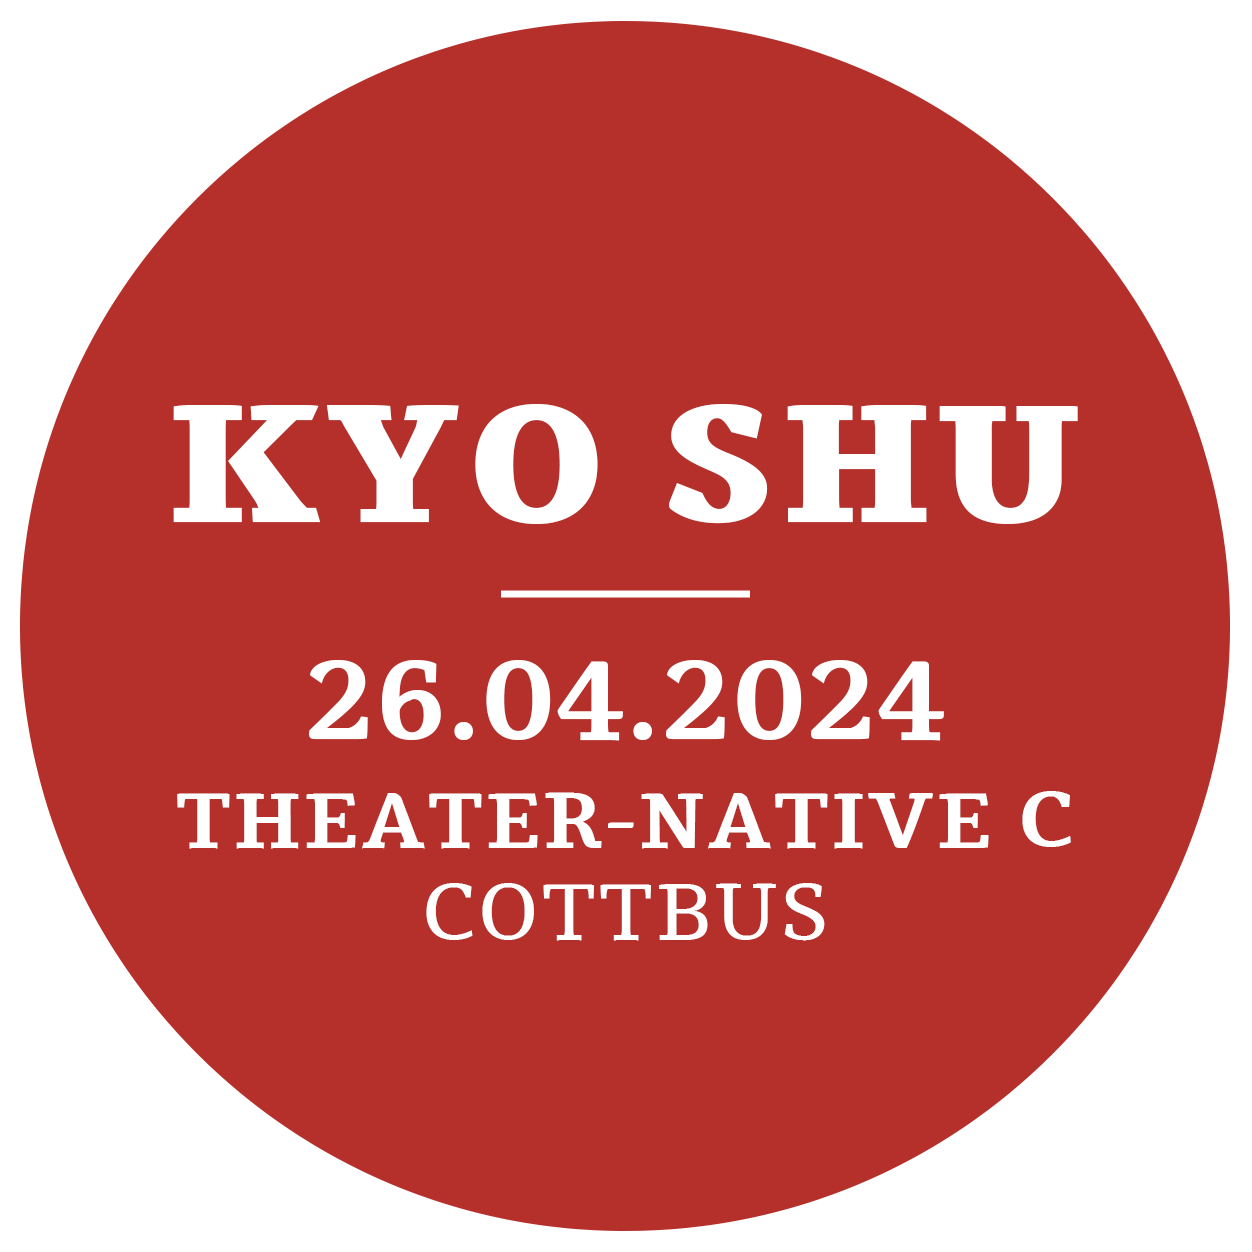 Kyo Shu